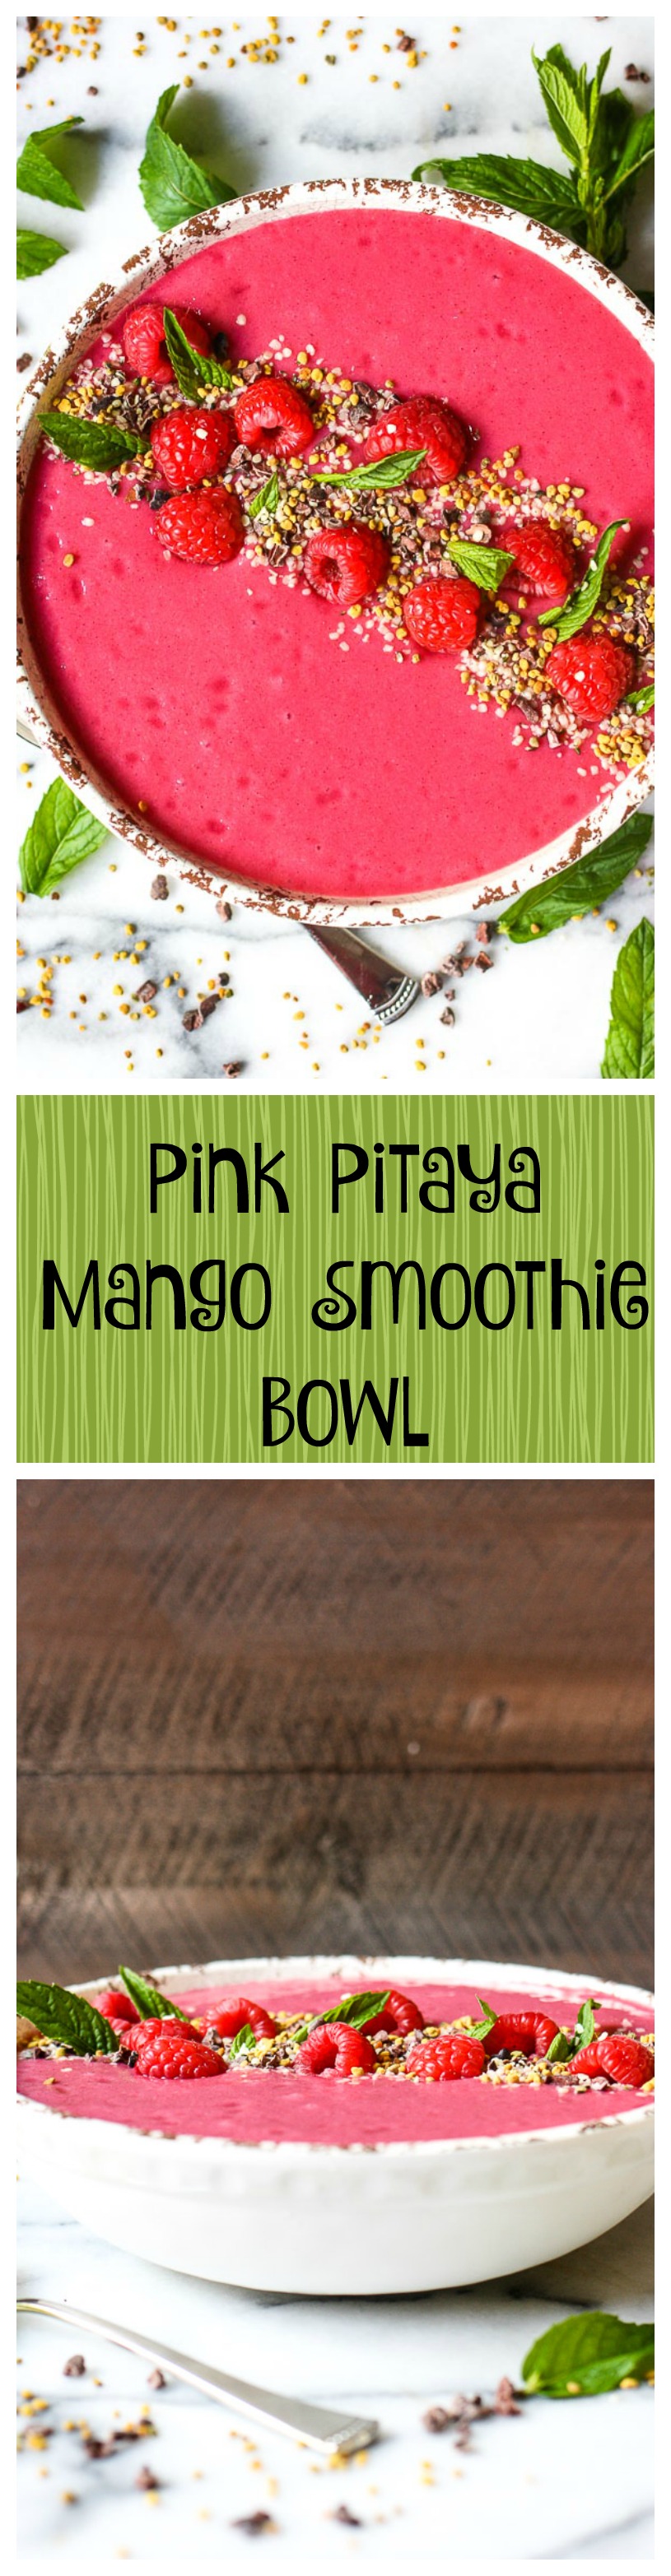 pink pitaya mango smoothie bowl